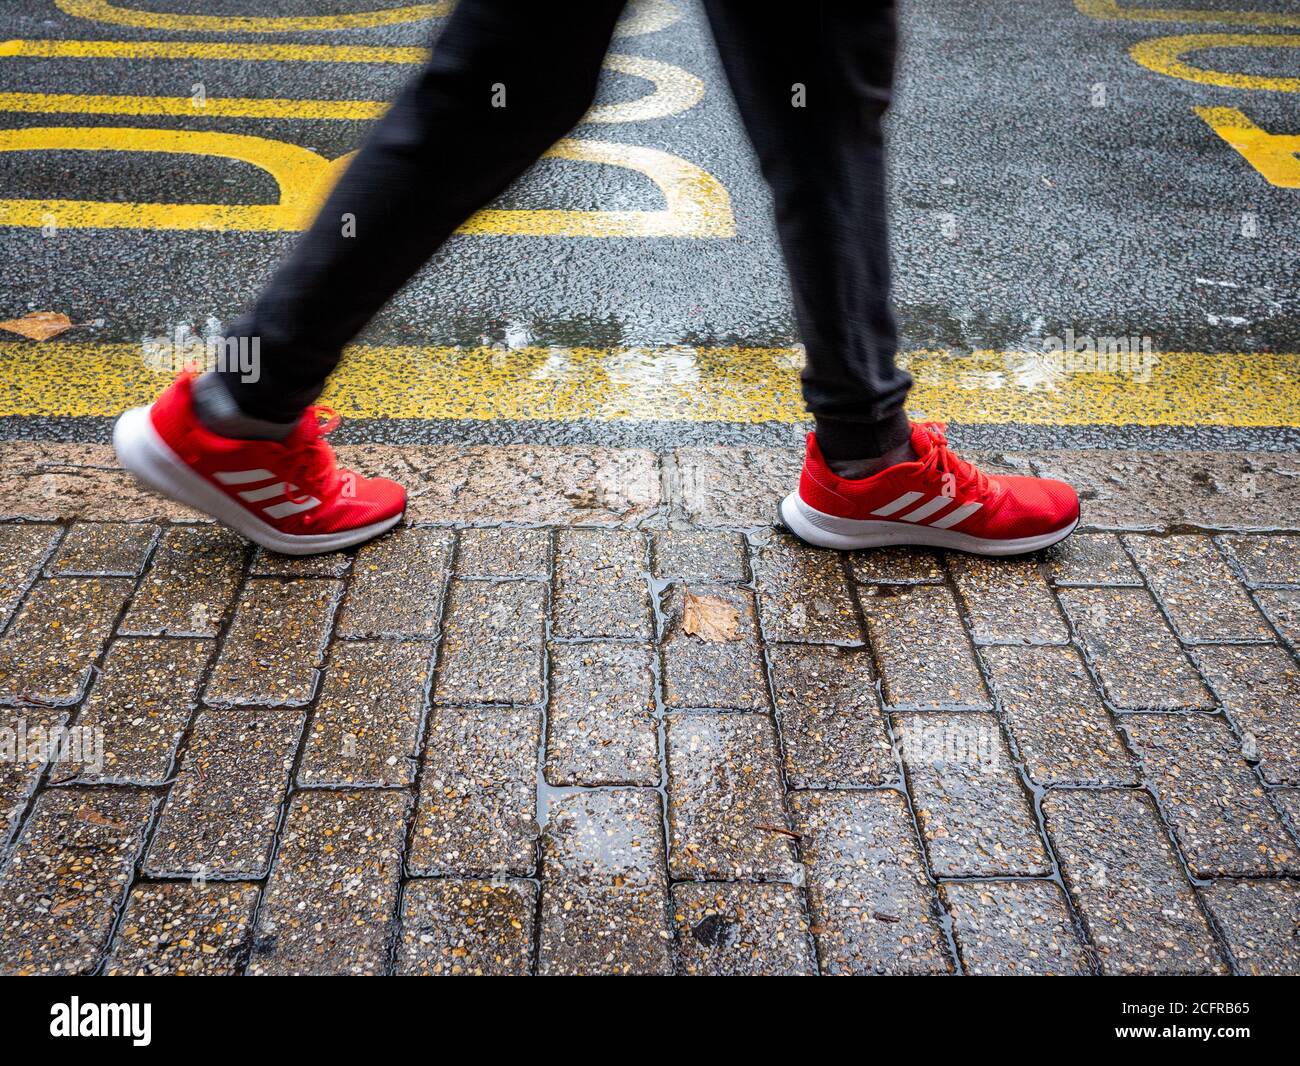 Persone gambe e piedi che camminano dal marciapiede su un giornata piovosa bagnata con scarpe da ginnastica a righe rosse Foto Stock